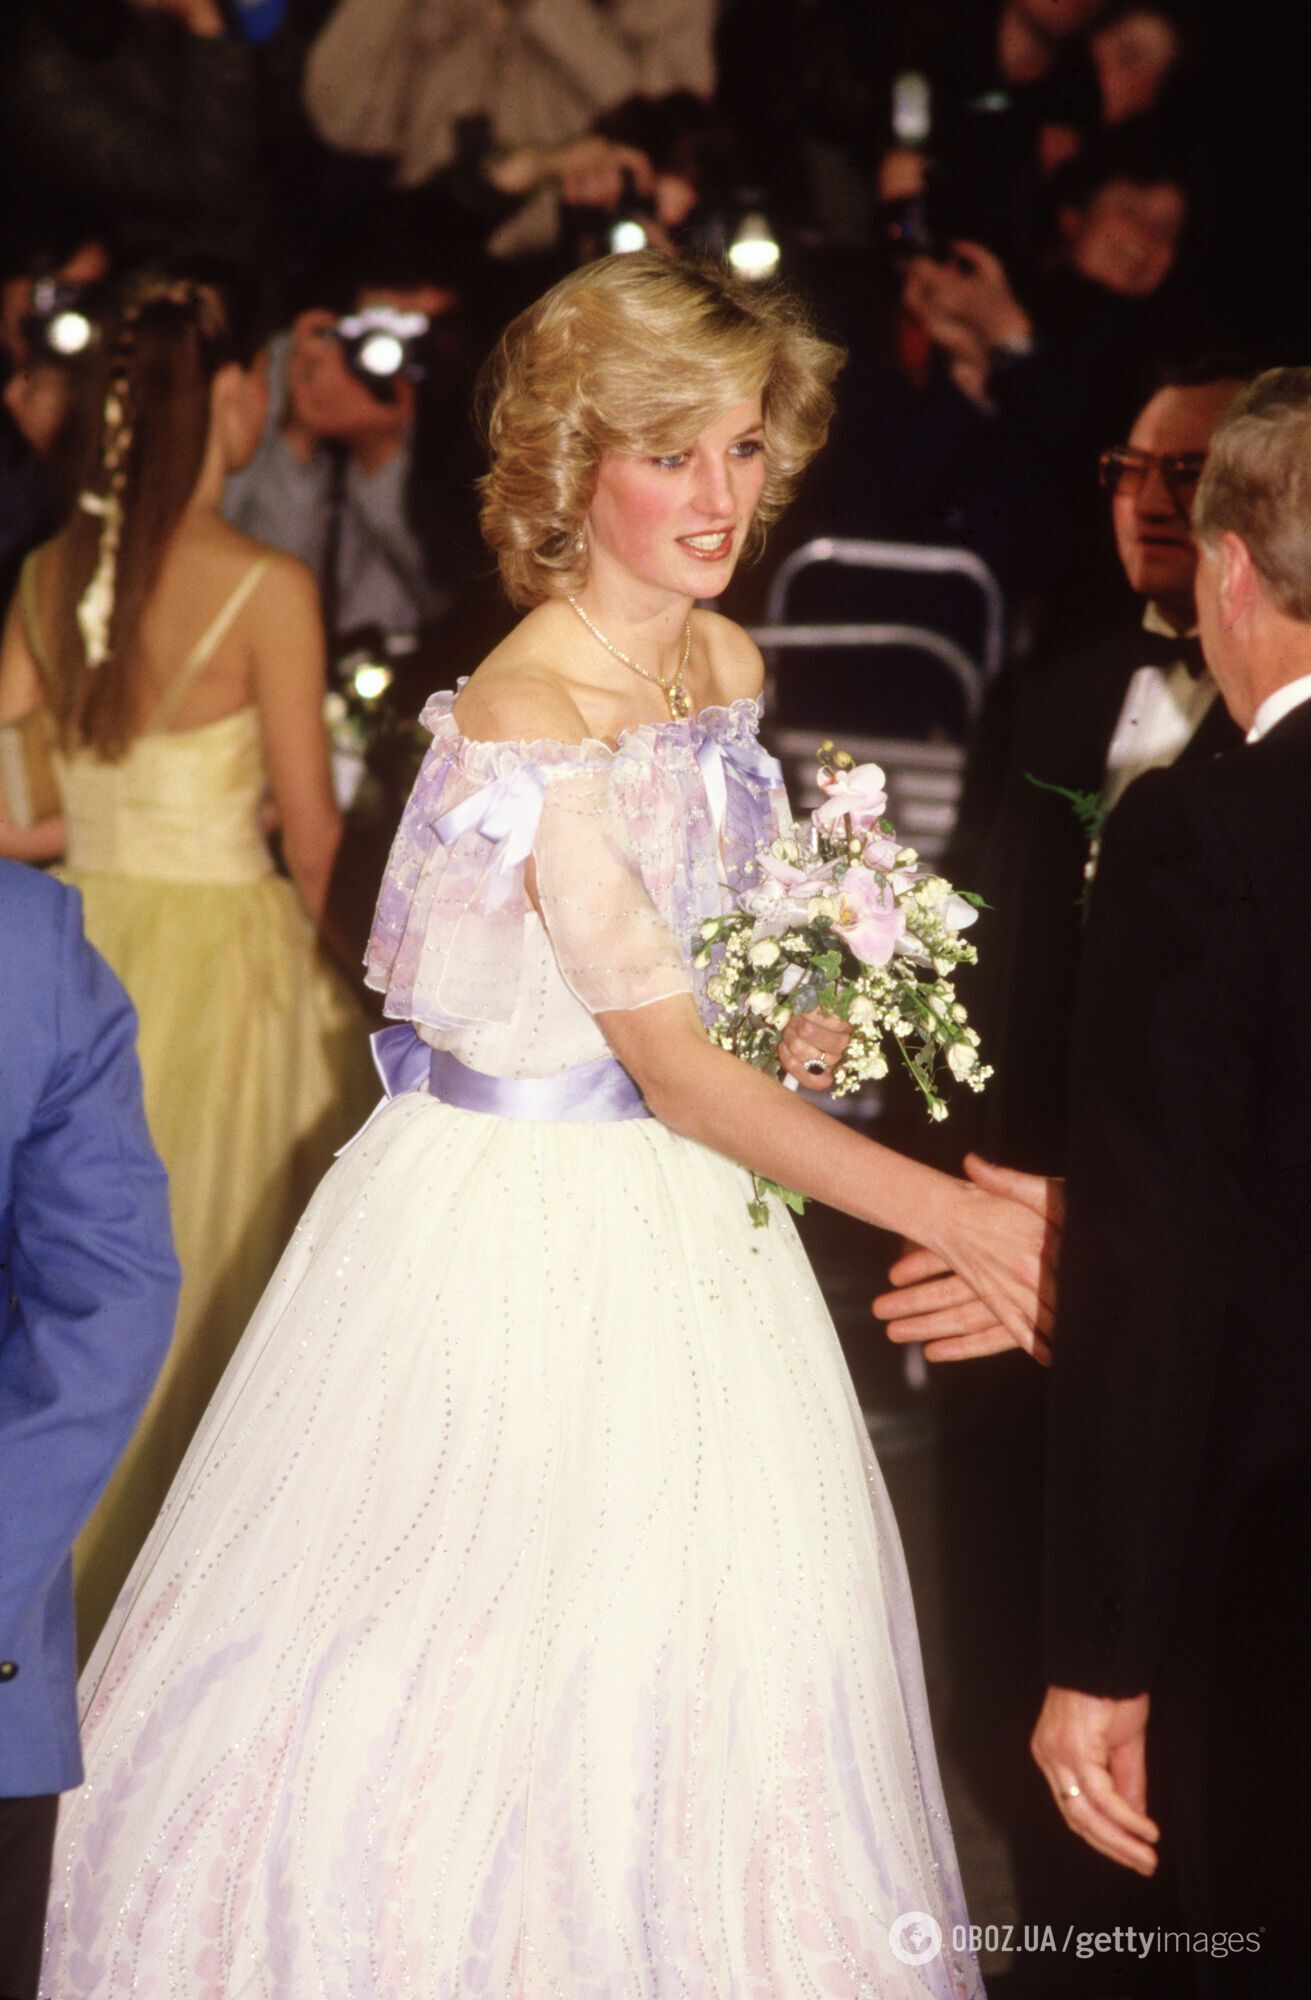 Видео встречи принцессы Дианы с "мистером Бином" в 1984 году растрогало сеть